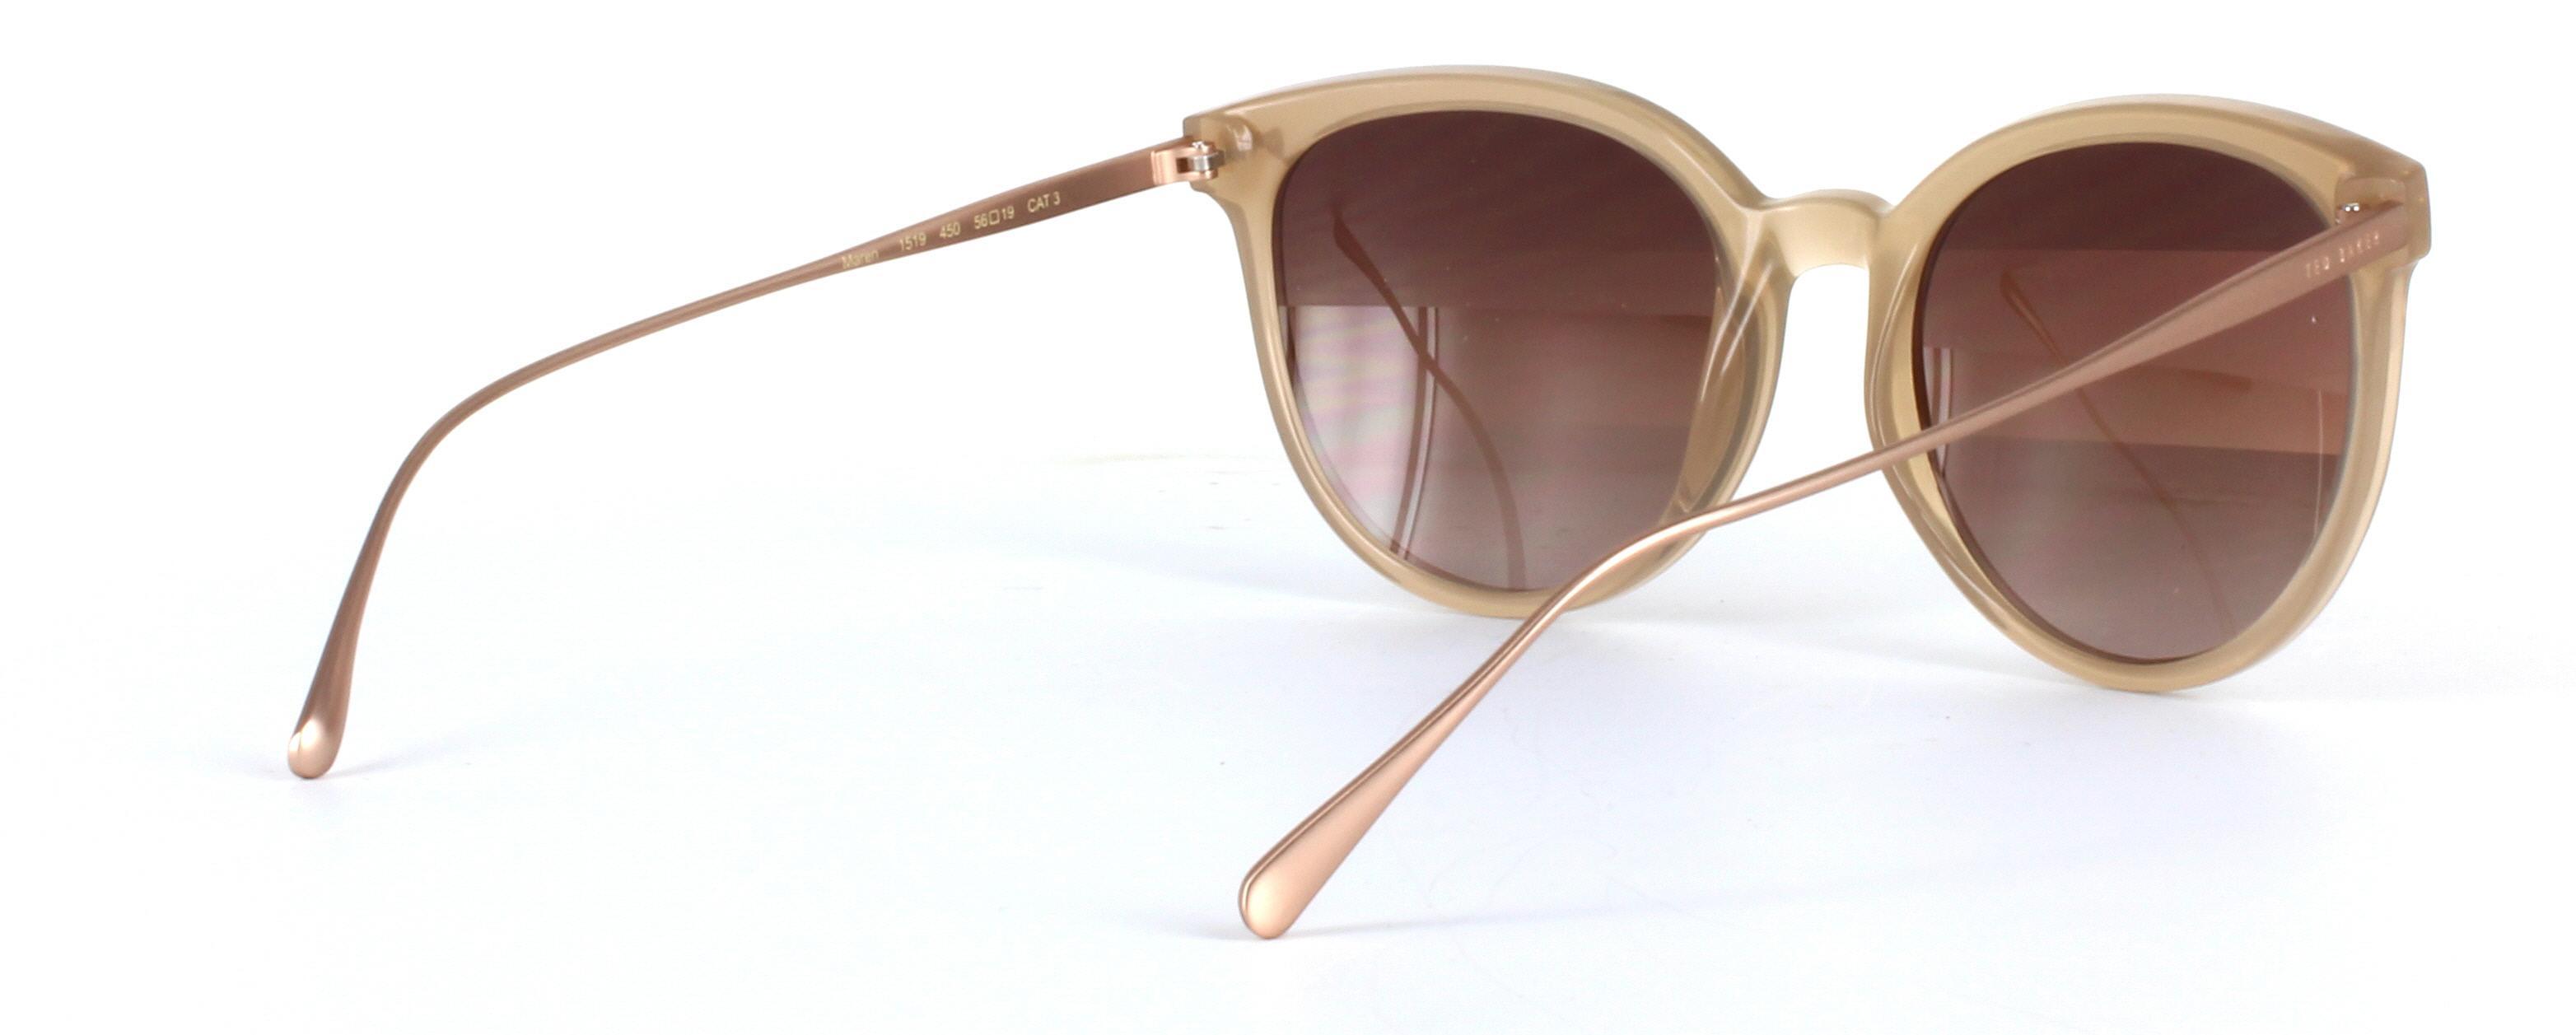 Ted Baker Maren Light Brown Full Rim Plastic Prescription Sunglasses - Image View 4